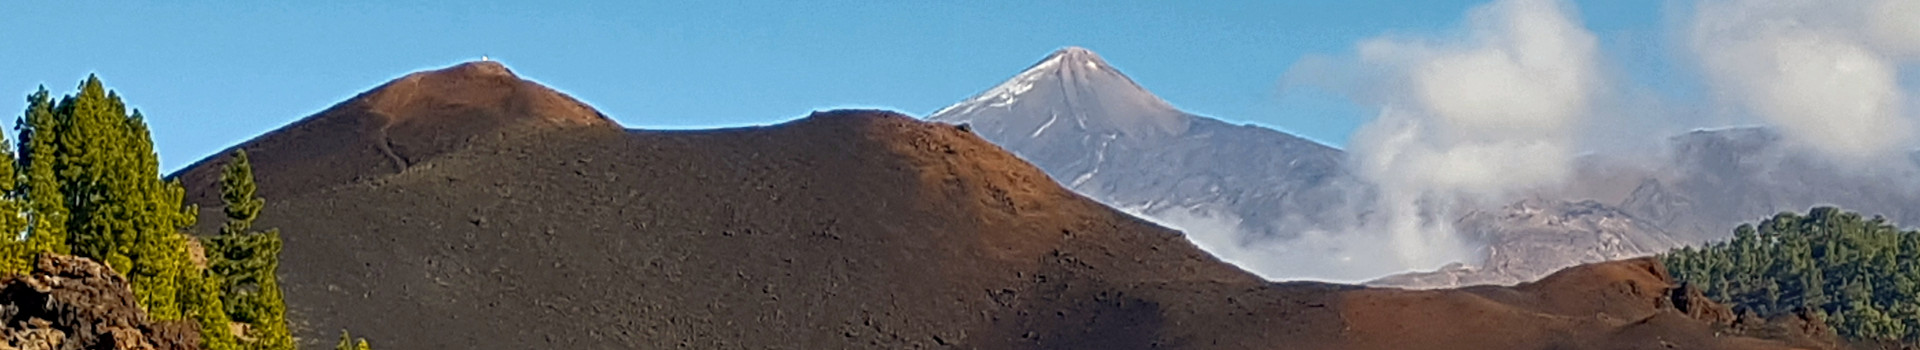 Vulkan Chinyero – Vulkan Garachico